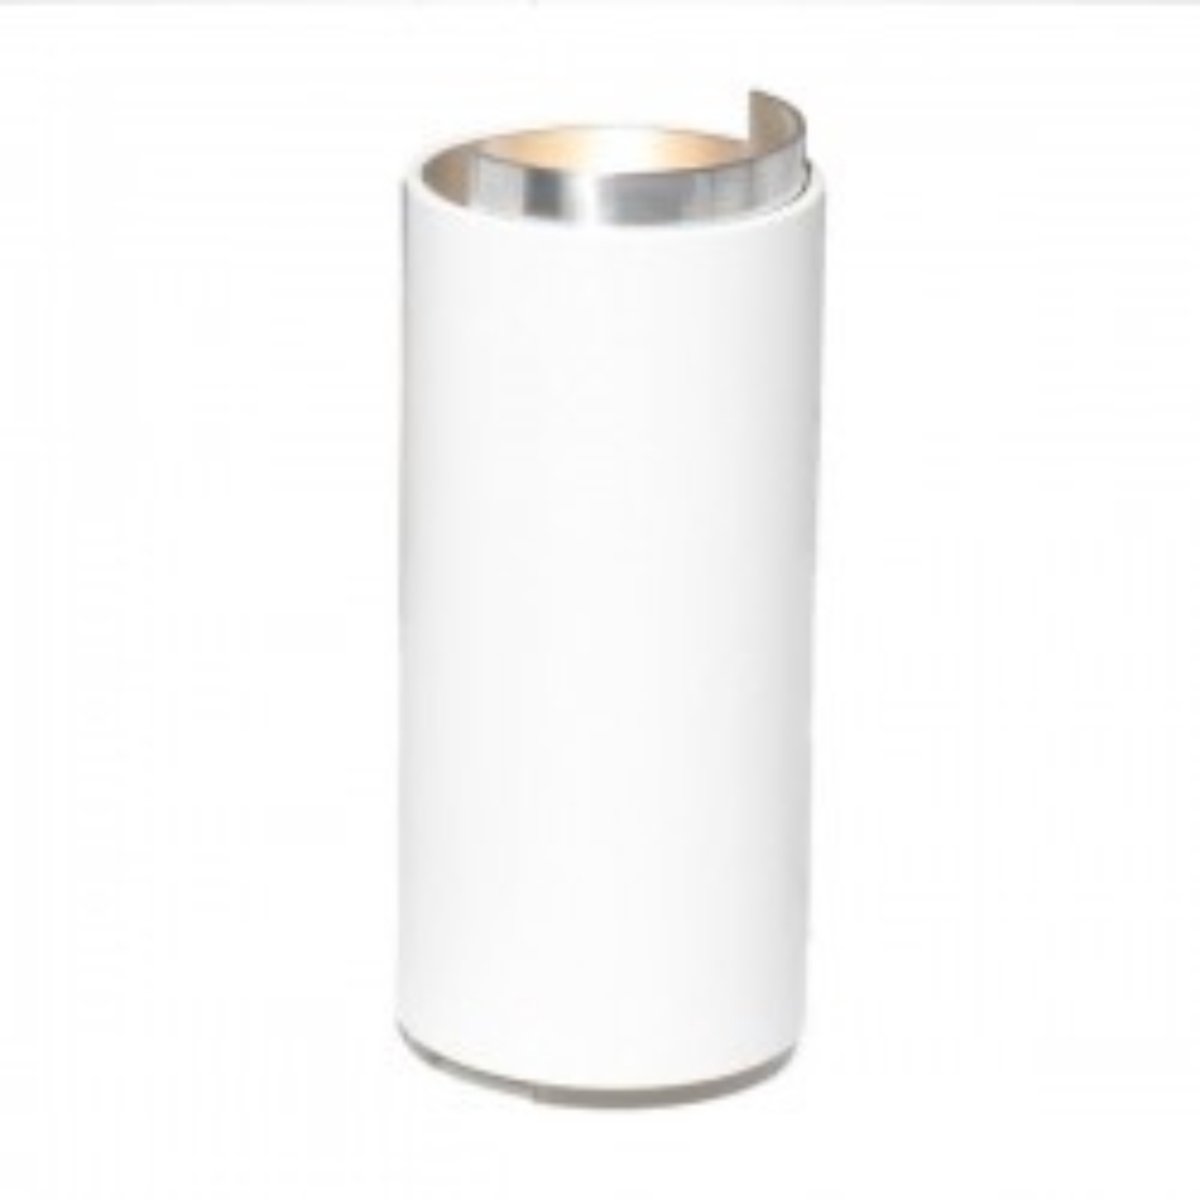 Axis71 Tube T Tafellamp | Aluminium - Verlichting - Decoratie - Interieur - Modern - Wit